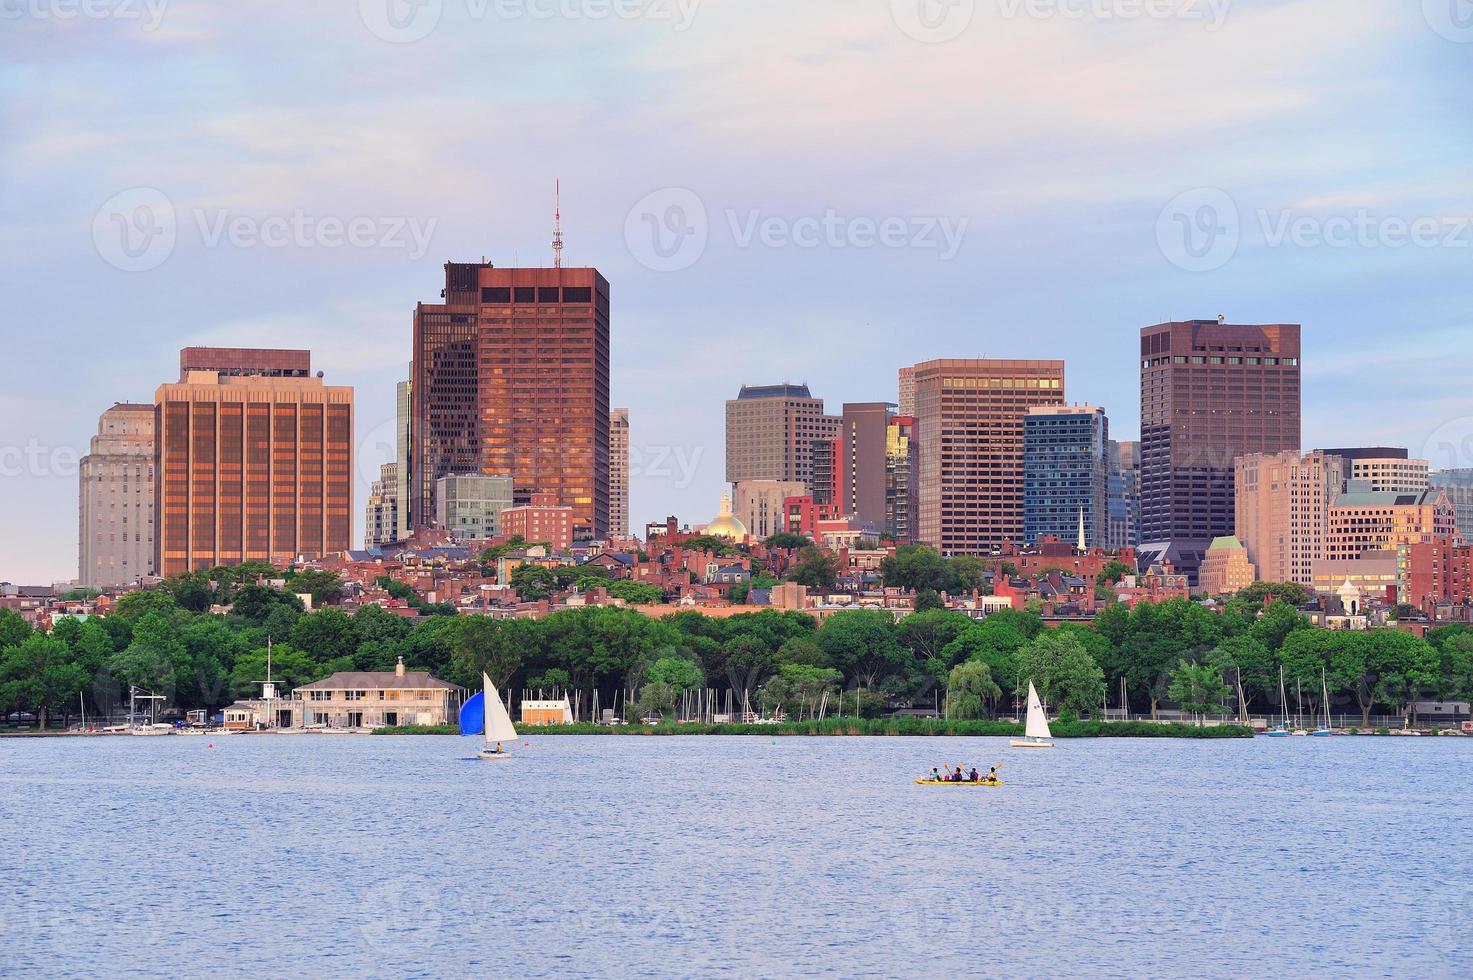 Boston utsikt över staden foto